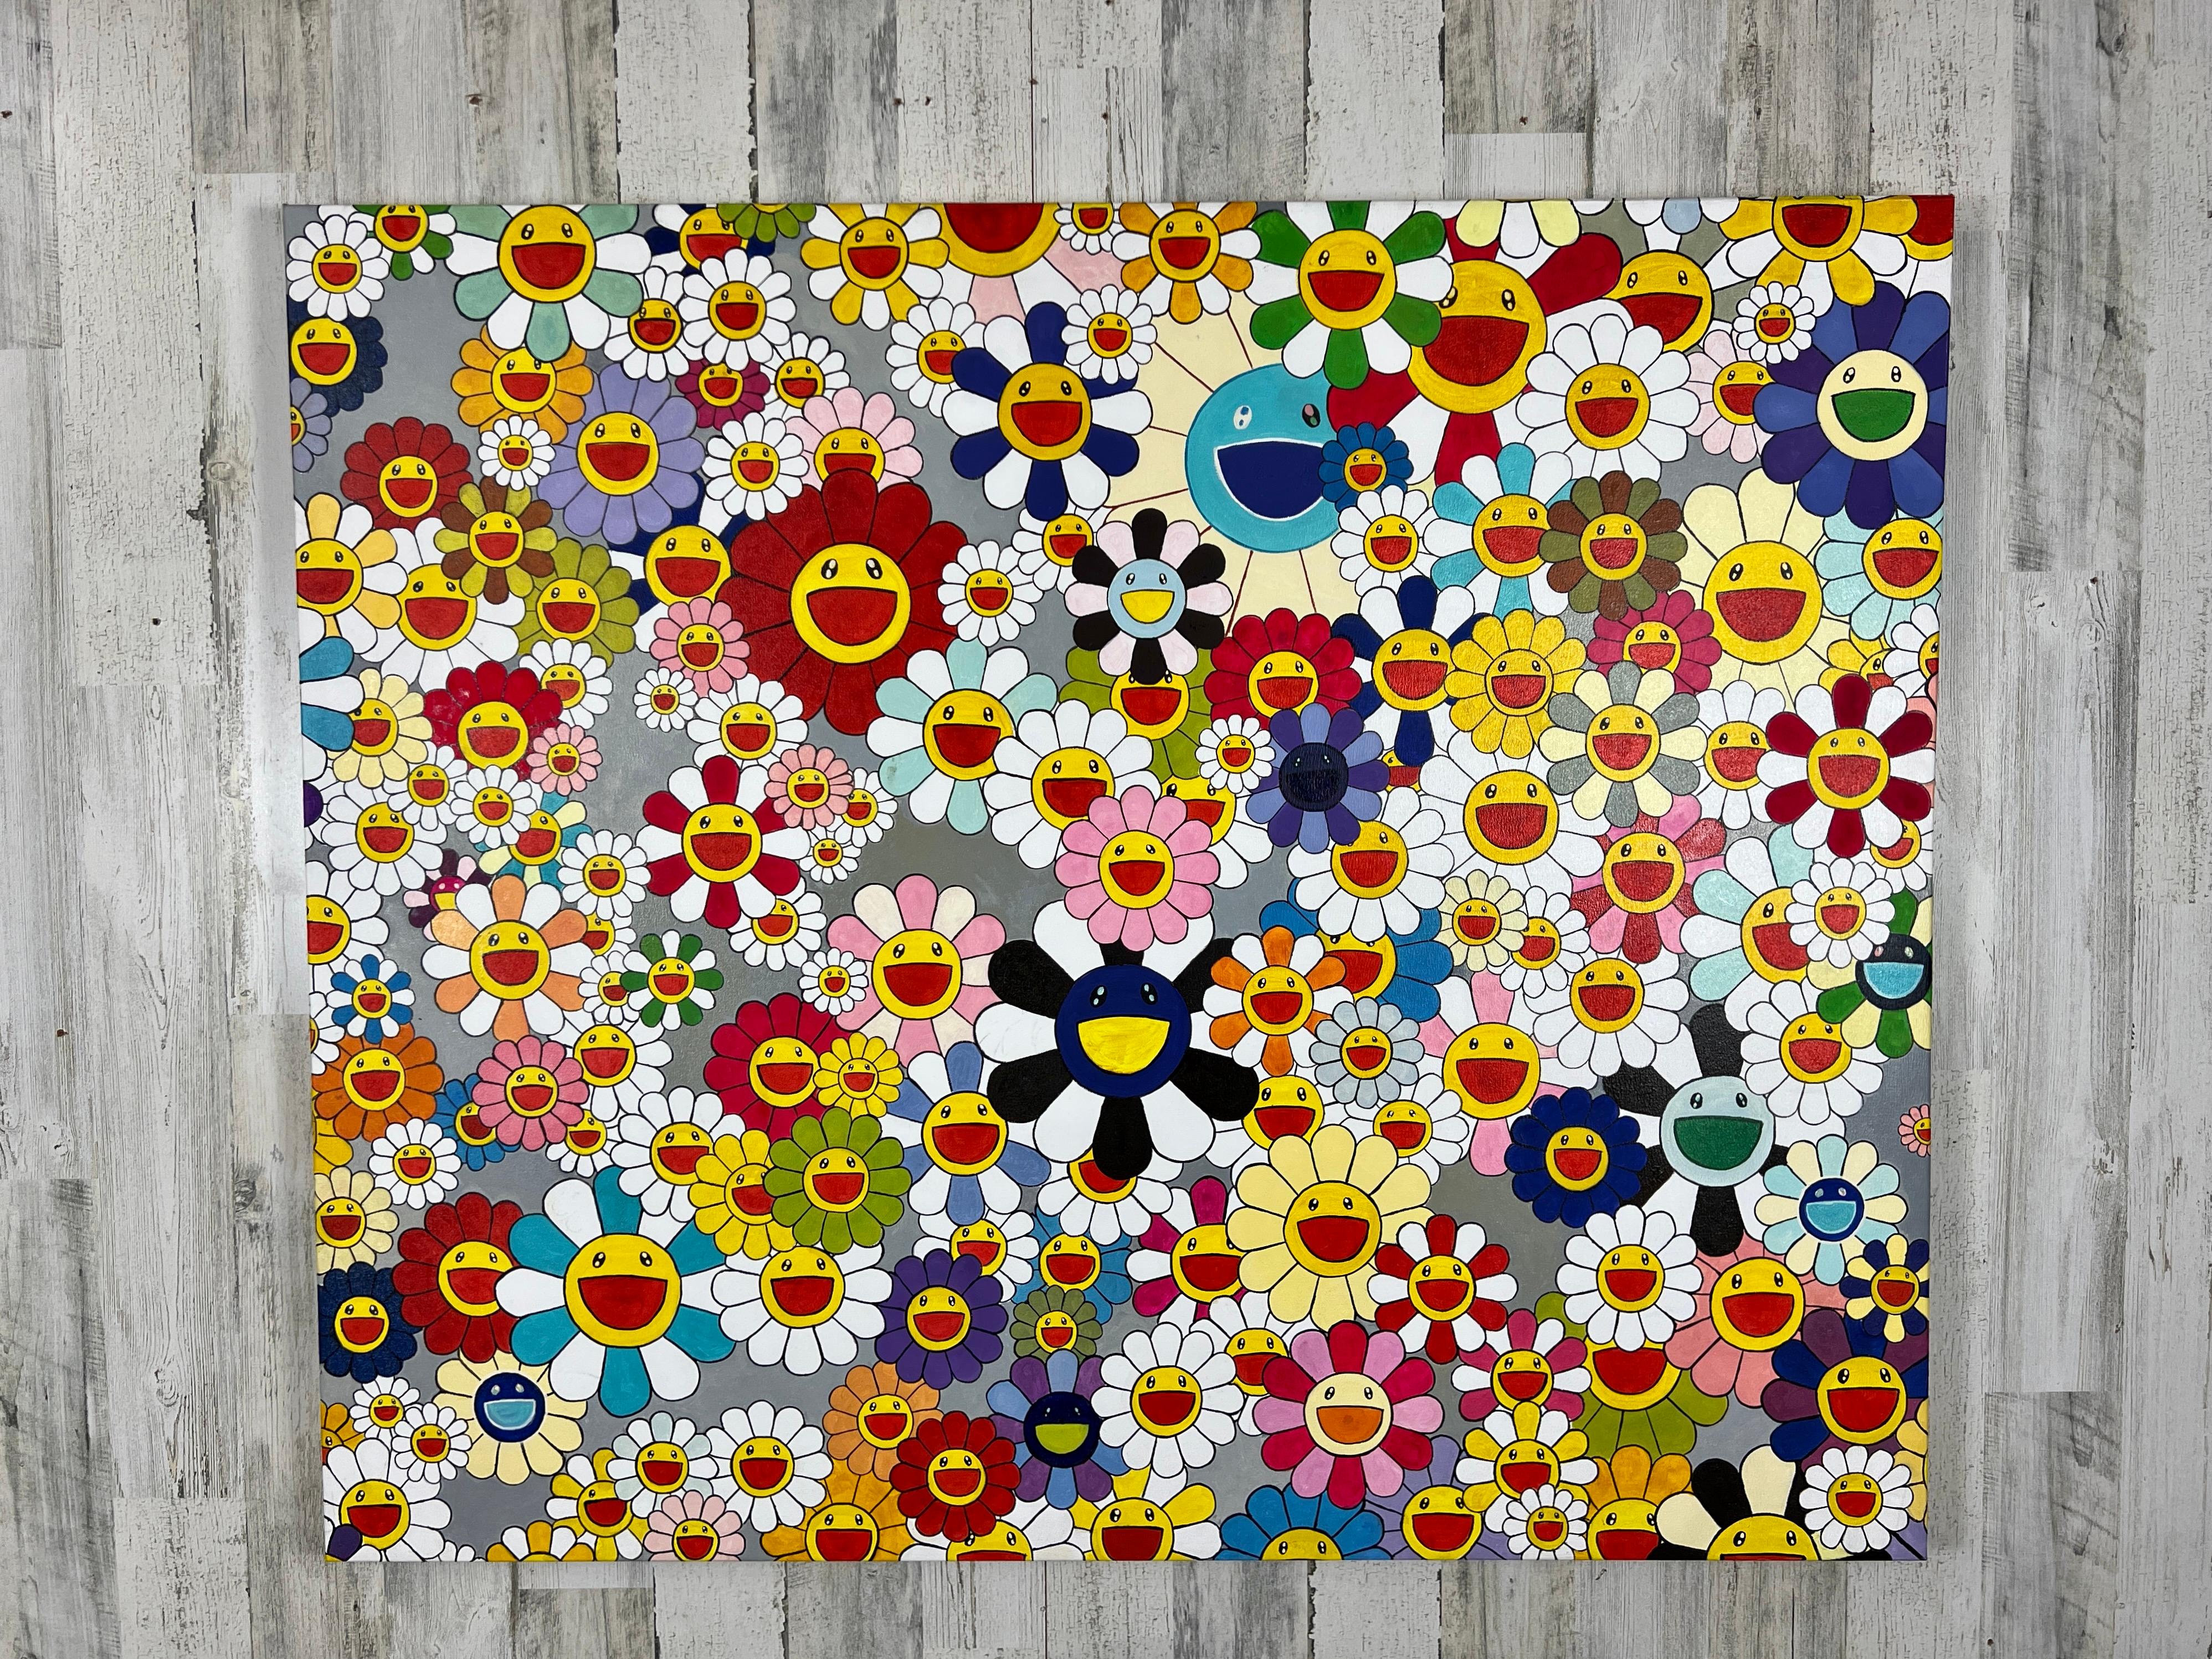 Öl auf Leinwand im Stil von Takashi Murakami . Sehr farbenfrohe Pop-Art, die jeden Raum erhellen kann. Es ist auf der Rückseite signiert bitte siehe Bilder